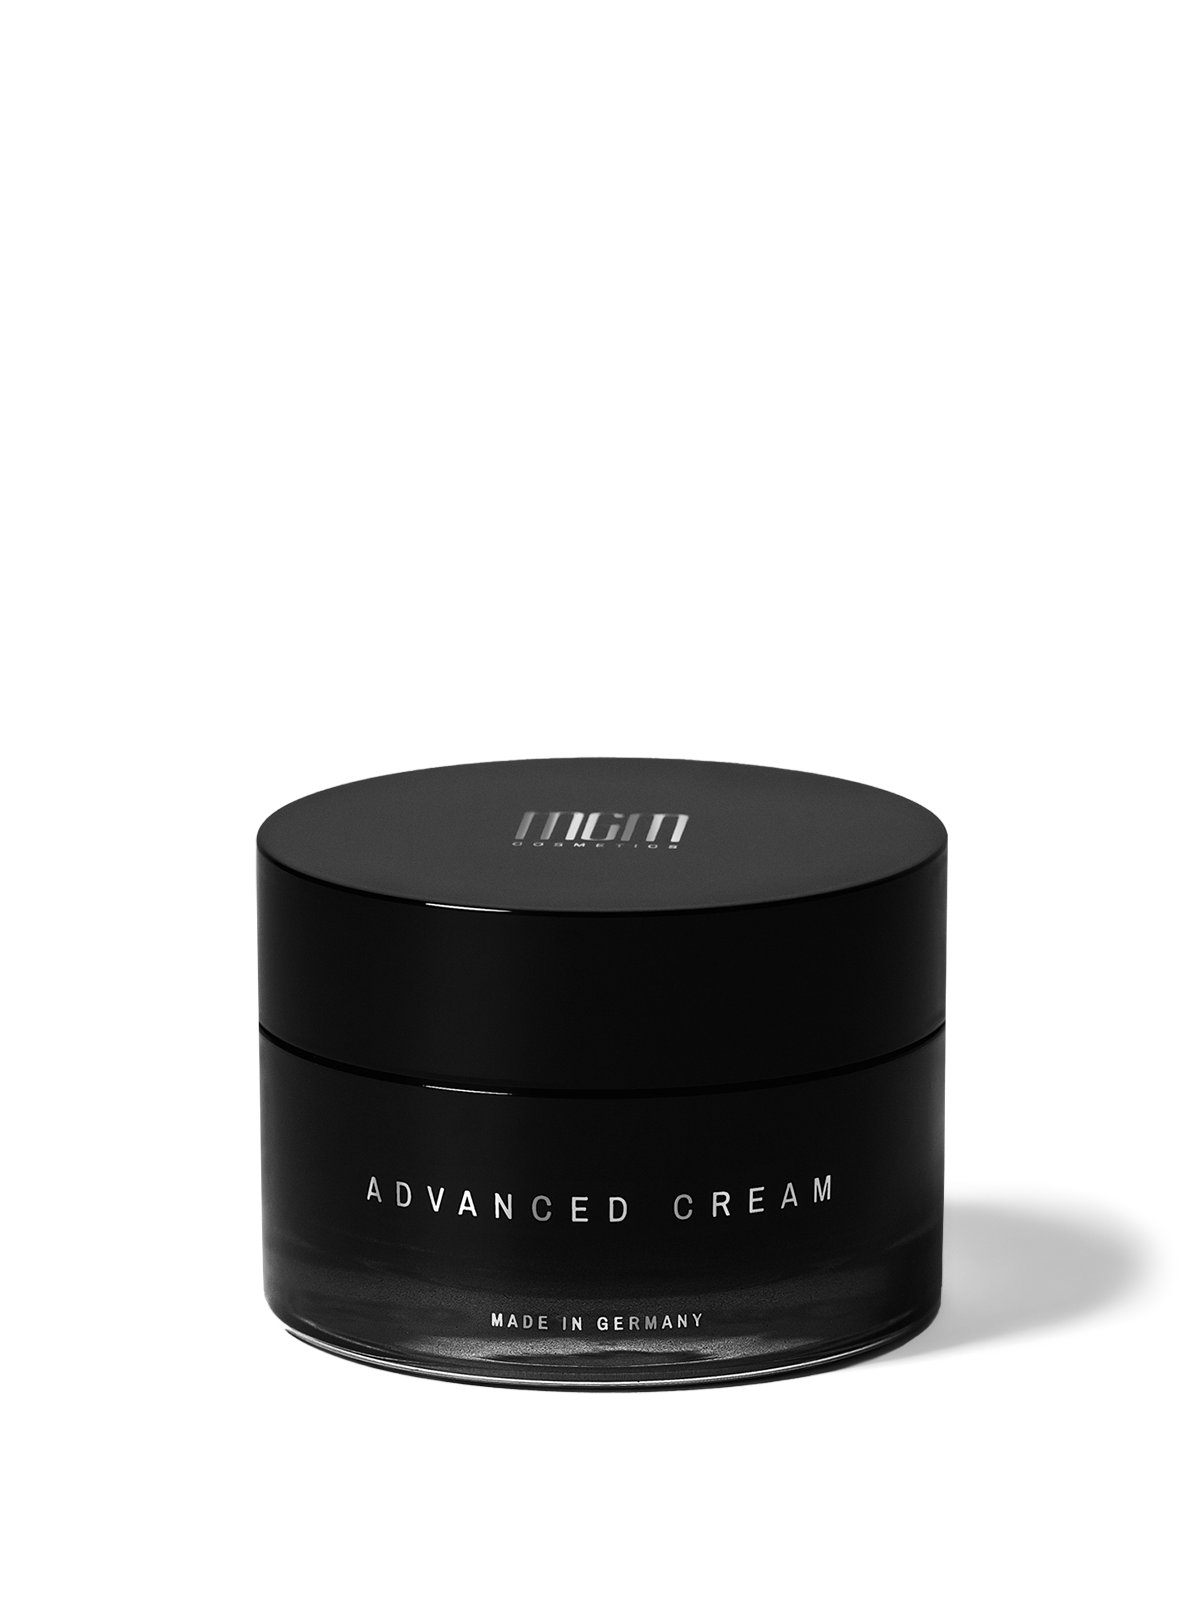 Advanced Cream